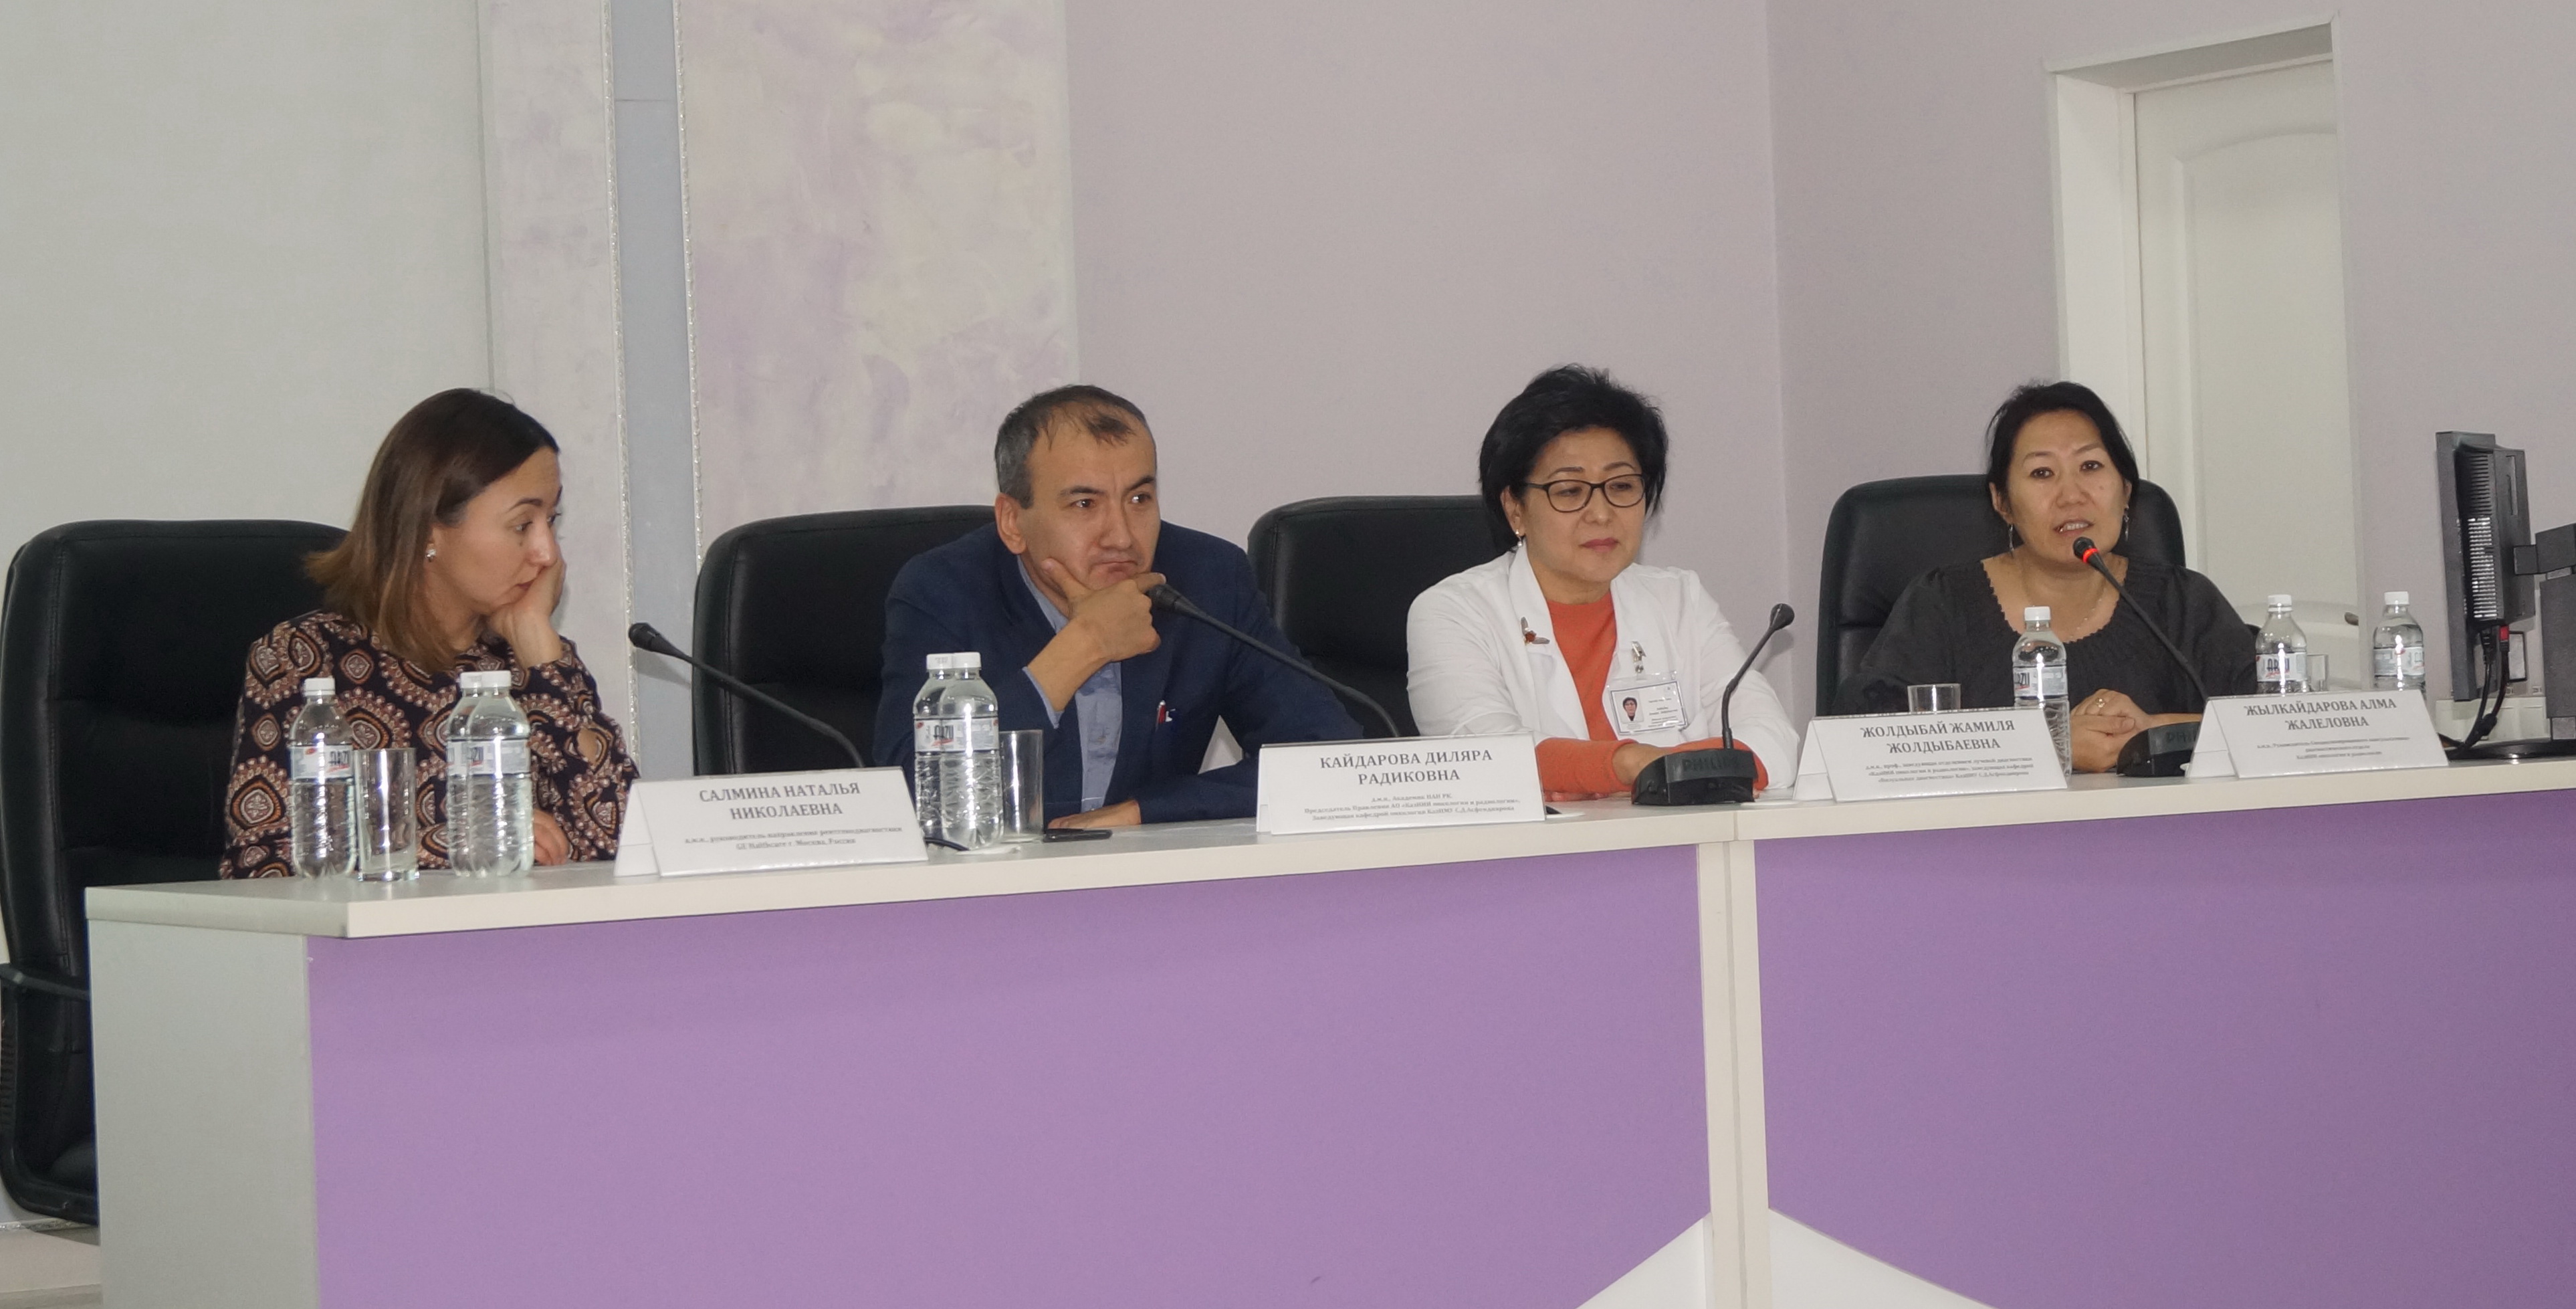 27-28 ноября 2019 года в Казахском НИИ онкологии и радиологии проводится региональный мастер-класс «Совершенствование скрининга рака молочной железы» для врачей Алматинской области и г.Алматы